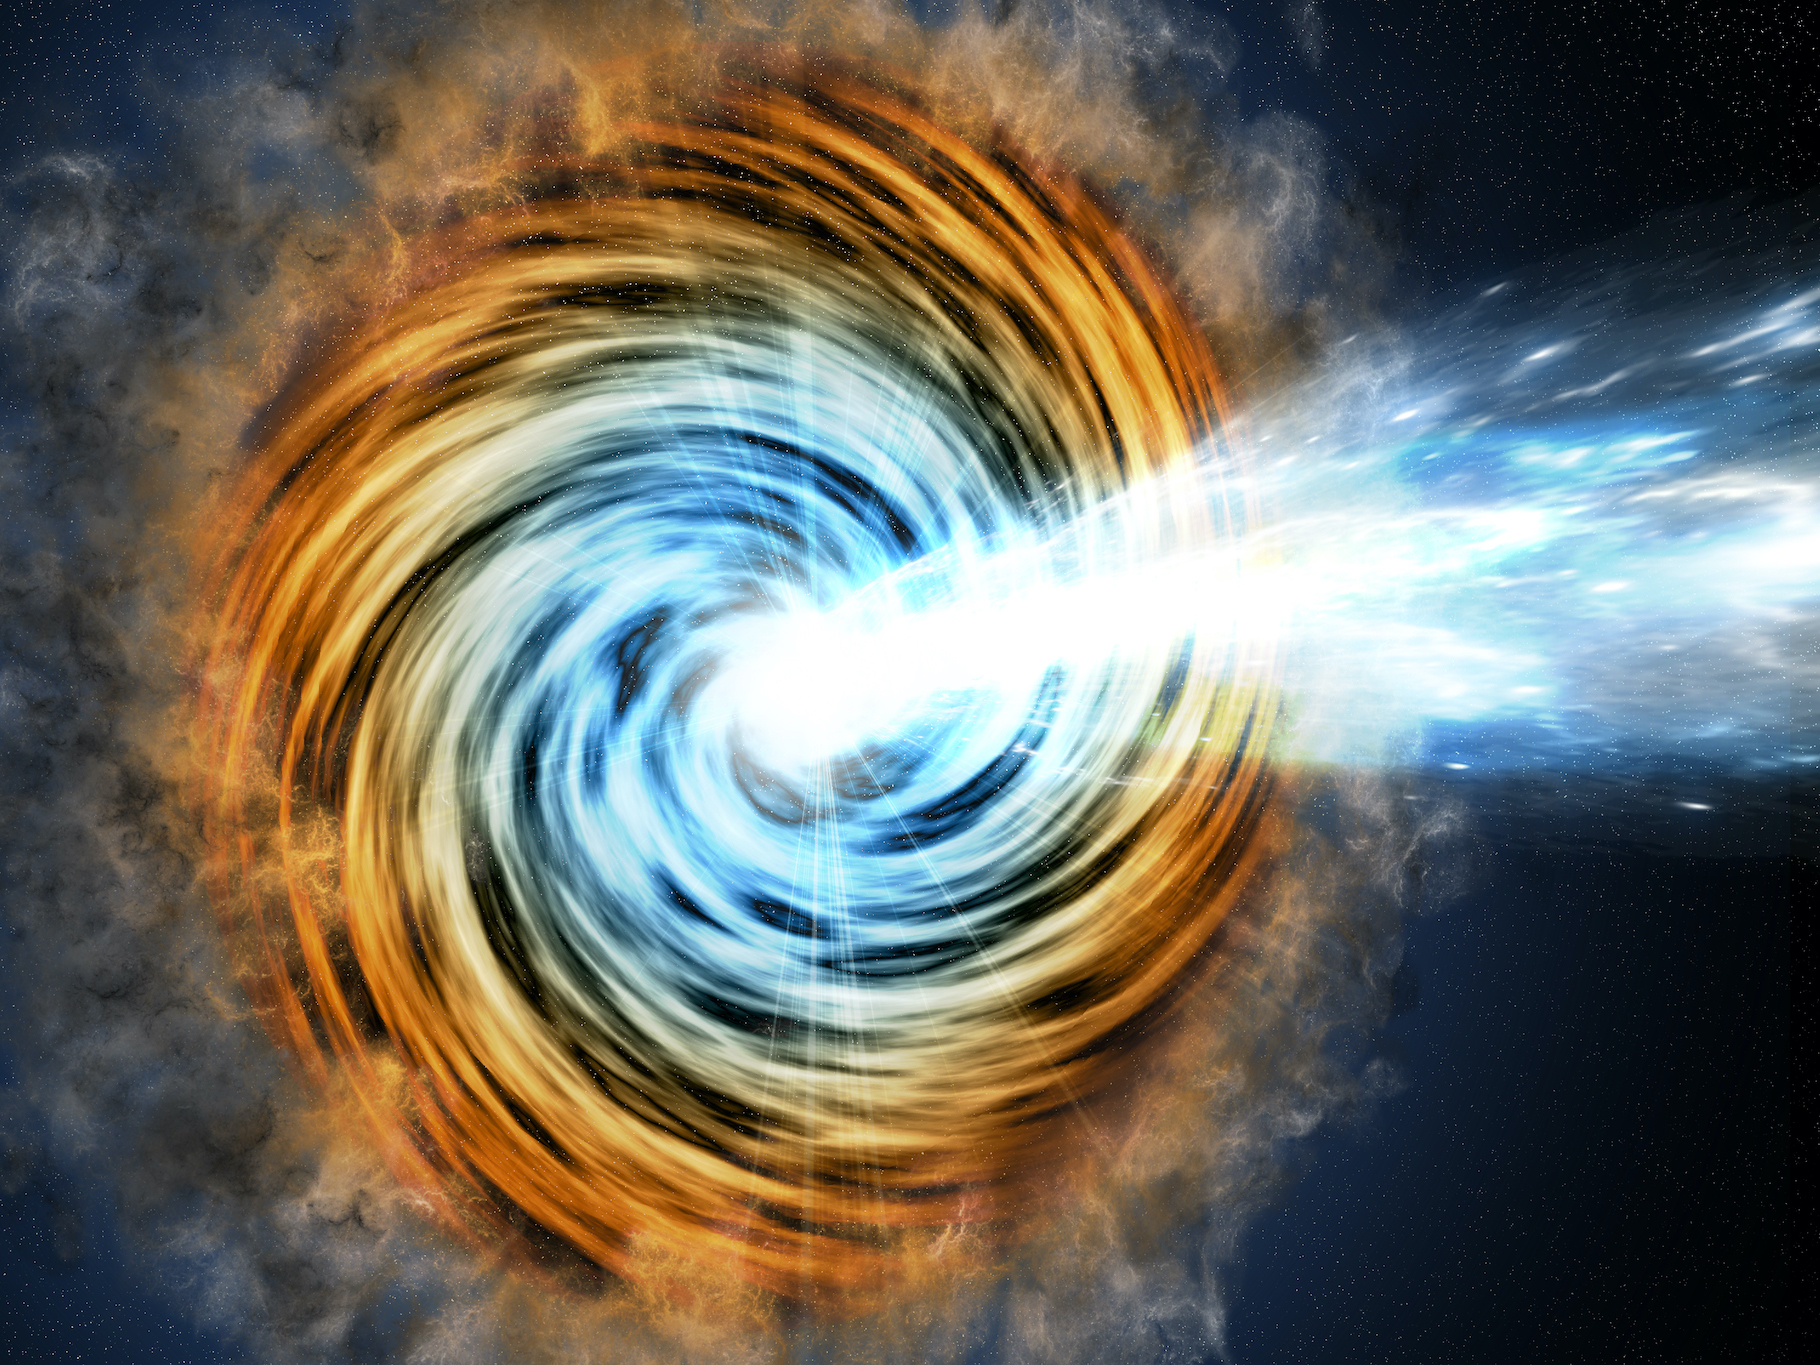 Une vue d’artiste de ce que serait un blazar, un noyau actif de galaxie alimenté par un trou noir supermassif. © M. Weiss/CfA, Nasa